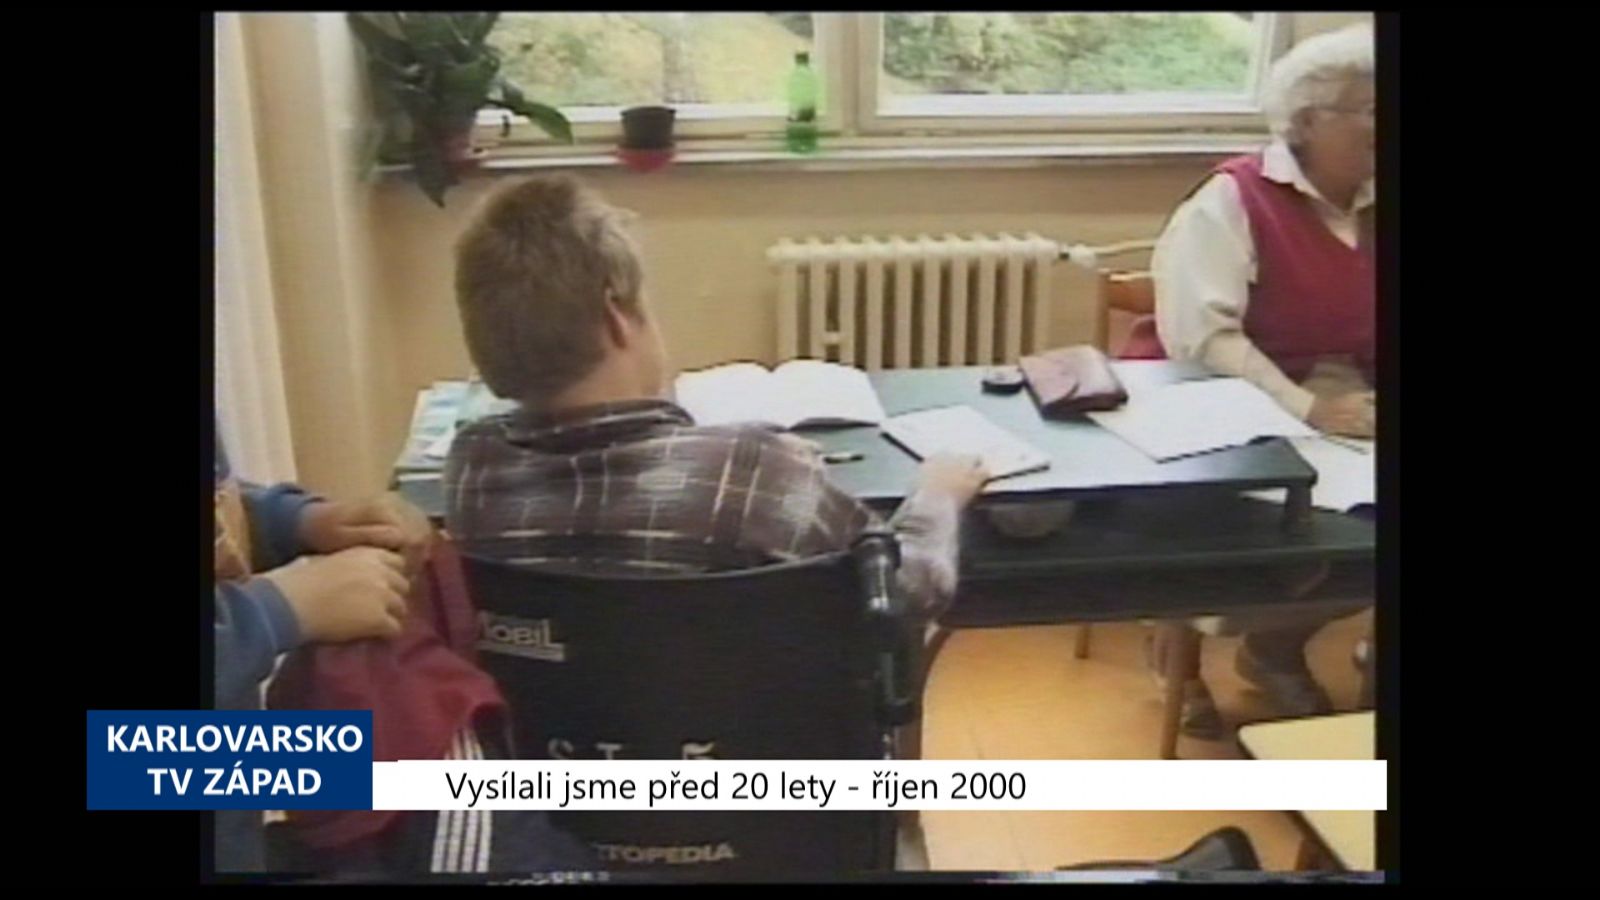 2000 – Cheb: Vozíčkářům budou ve škole pomáhat asistenti (TV Západ) 